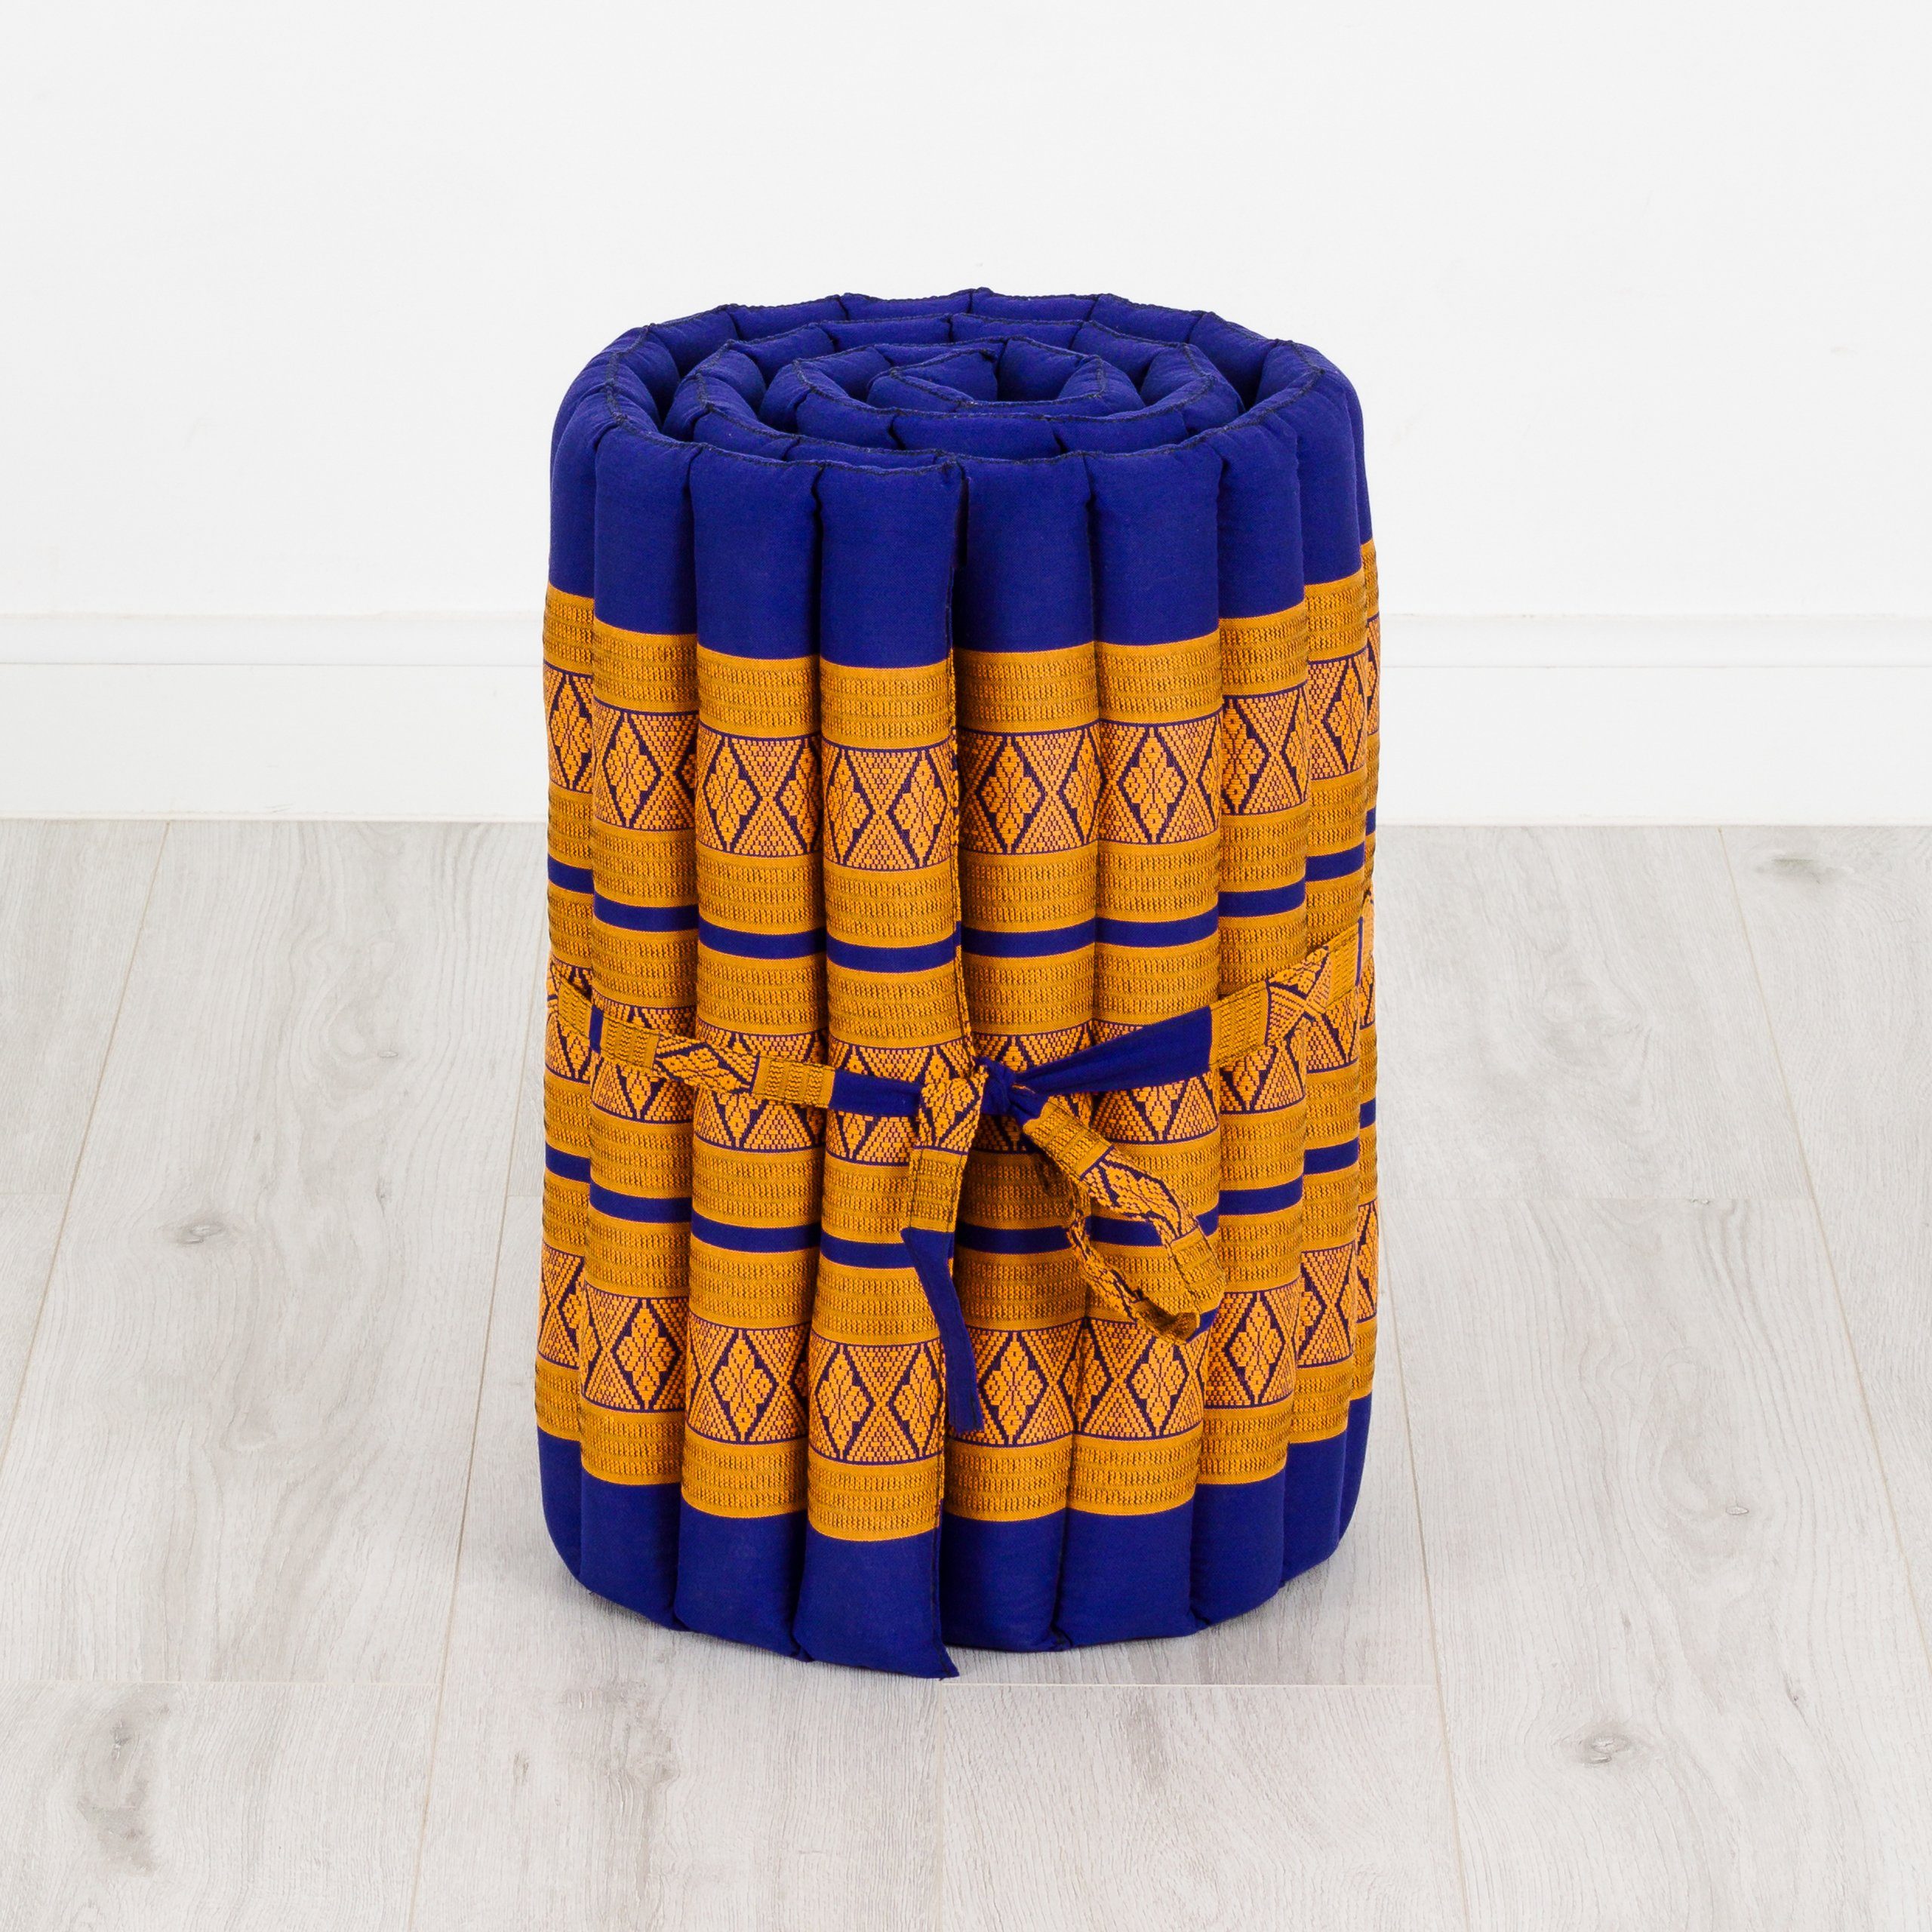 Reisebett-Matratzen Rollmatte handgefertigt, vegan livasia, hoch, Kapok und breit, Blau/Gelb 50 cm 210x50x4,5cm, cm 4,50